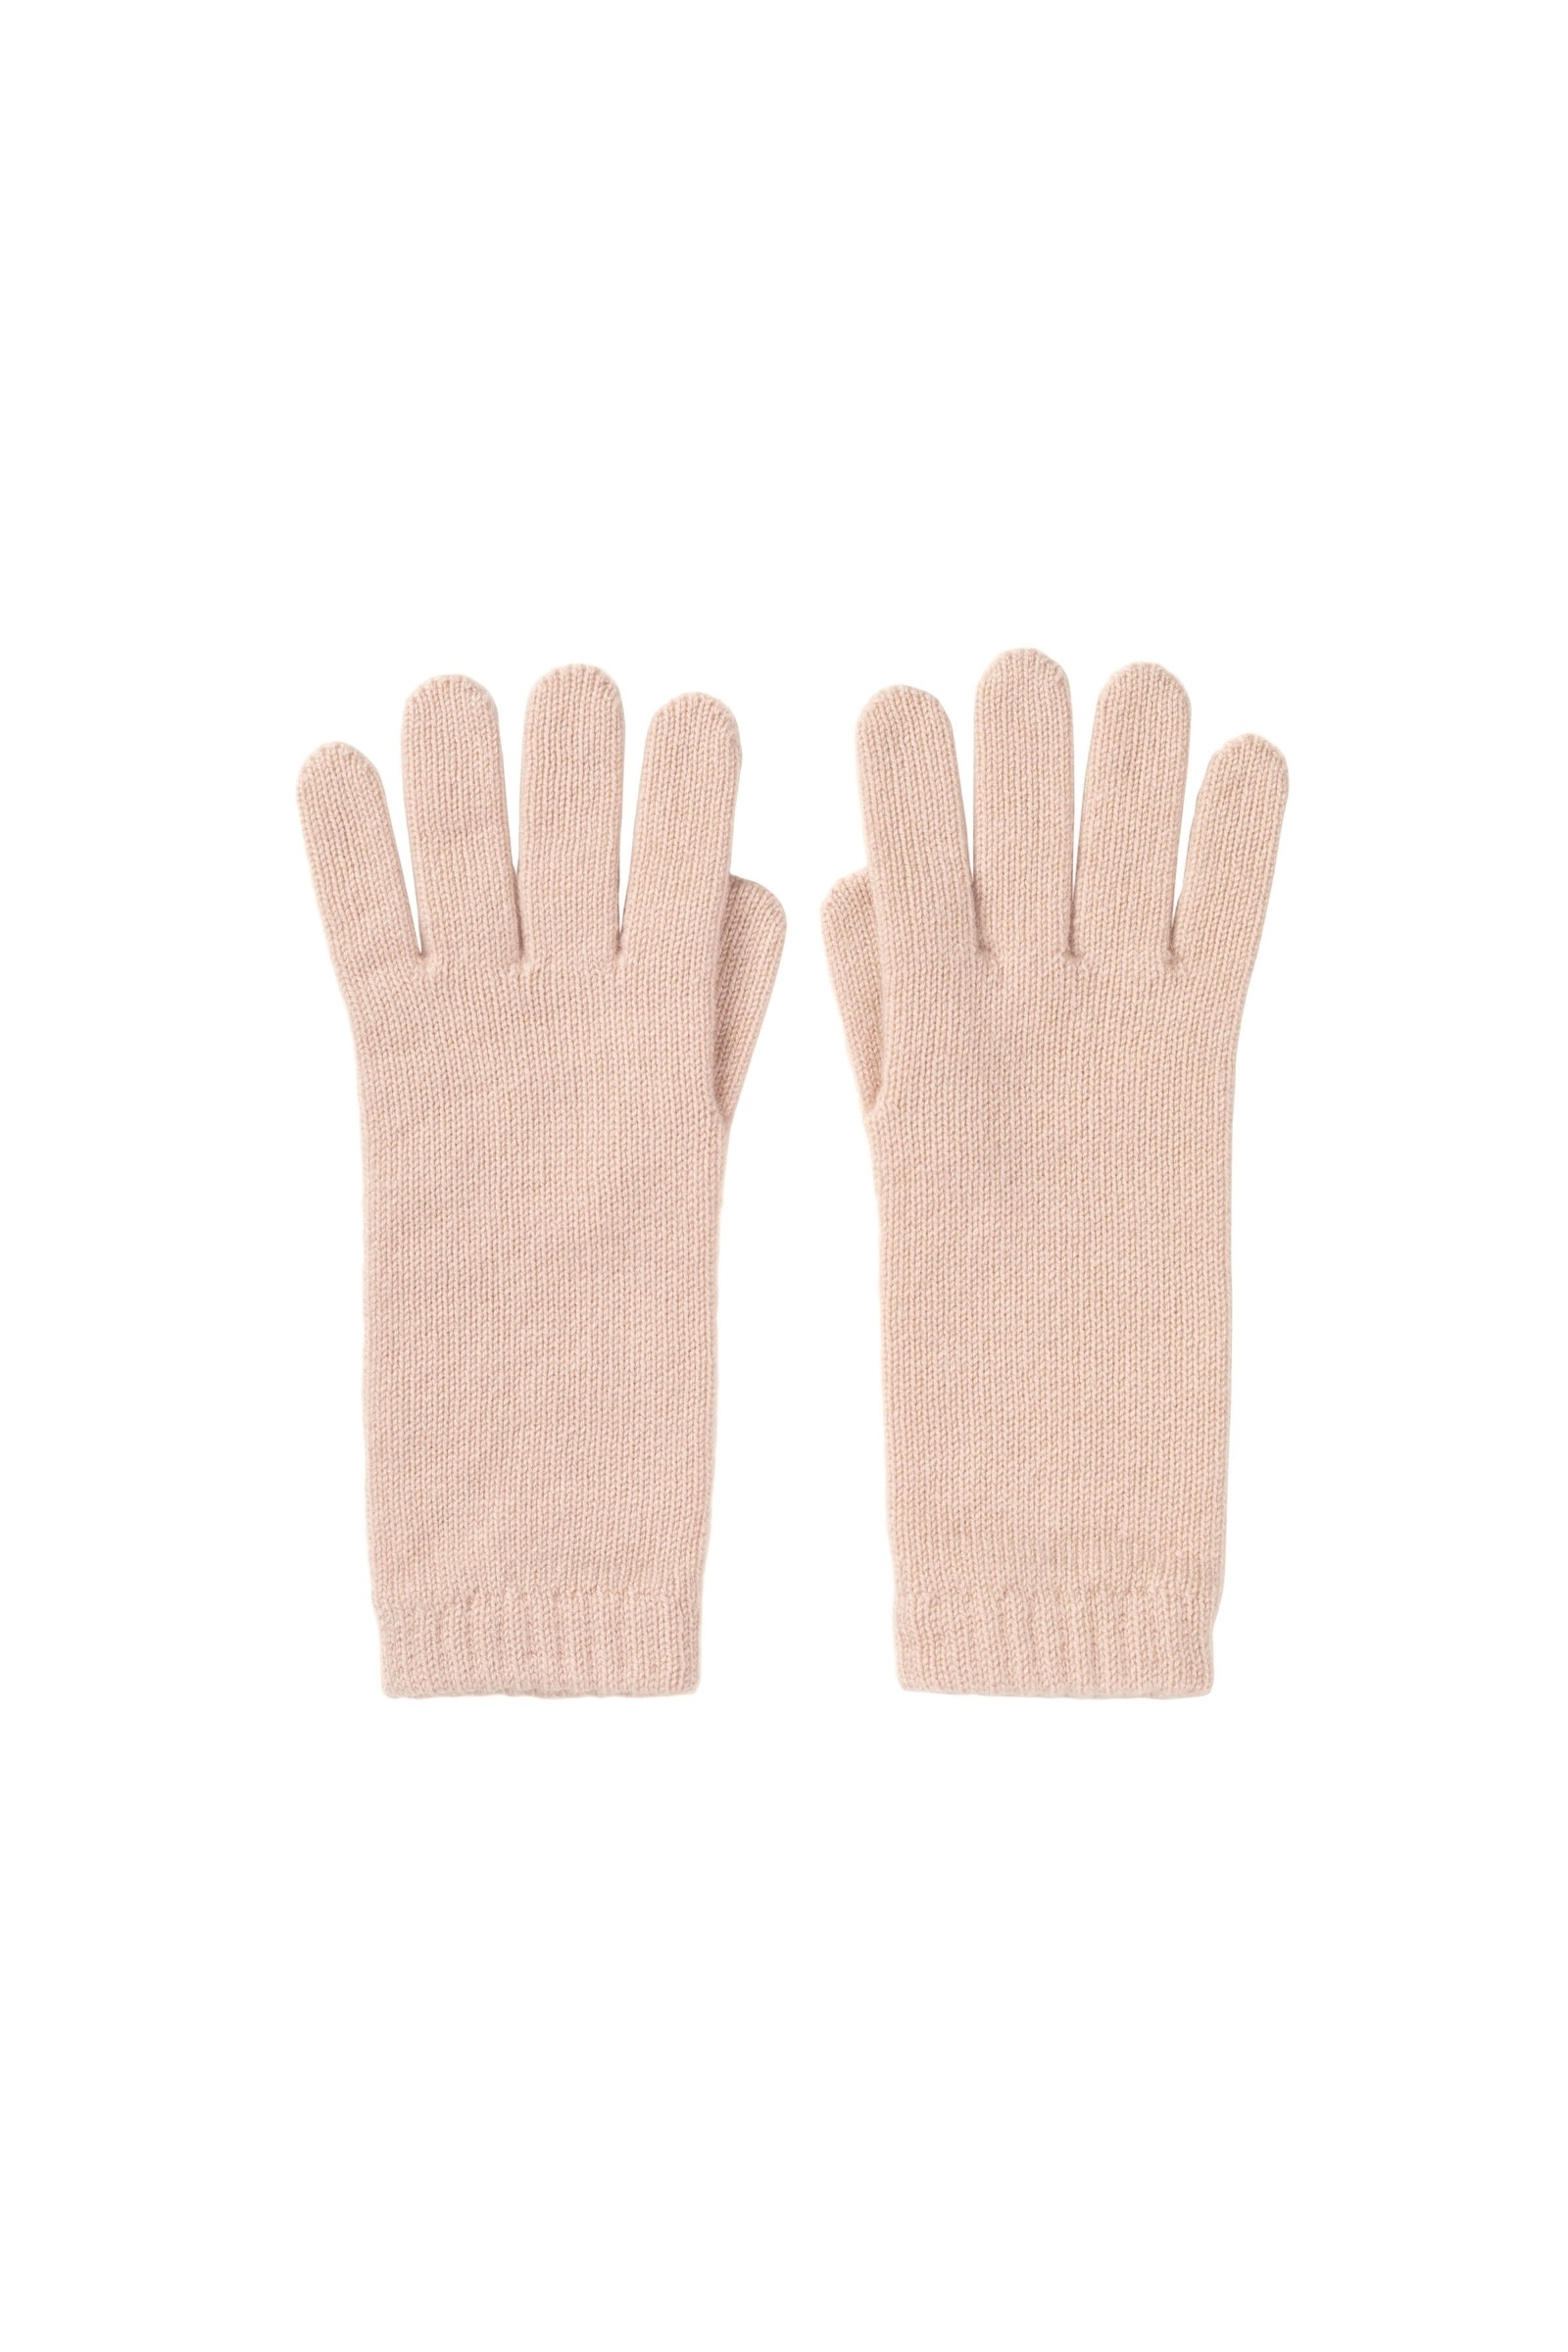 Made in Scotland JOHNSTONS OF ELGIN 100% CASHMERE Women's Full Finger Gloves 